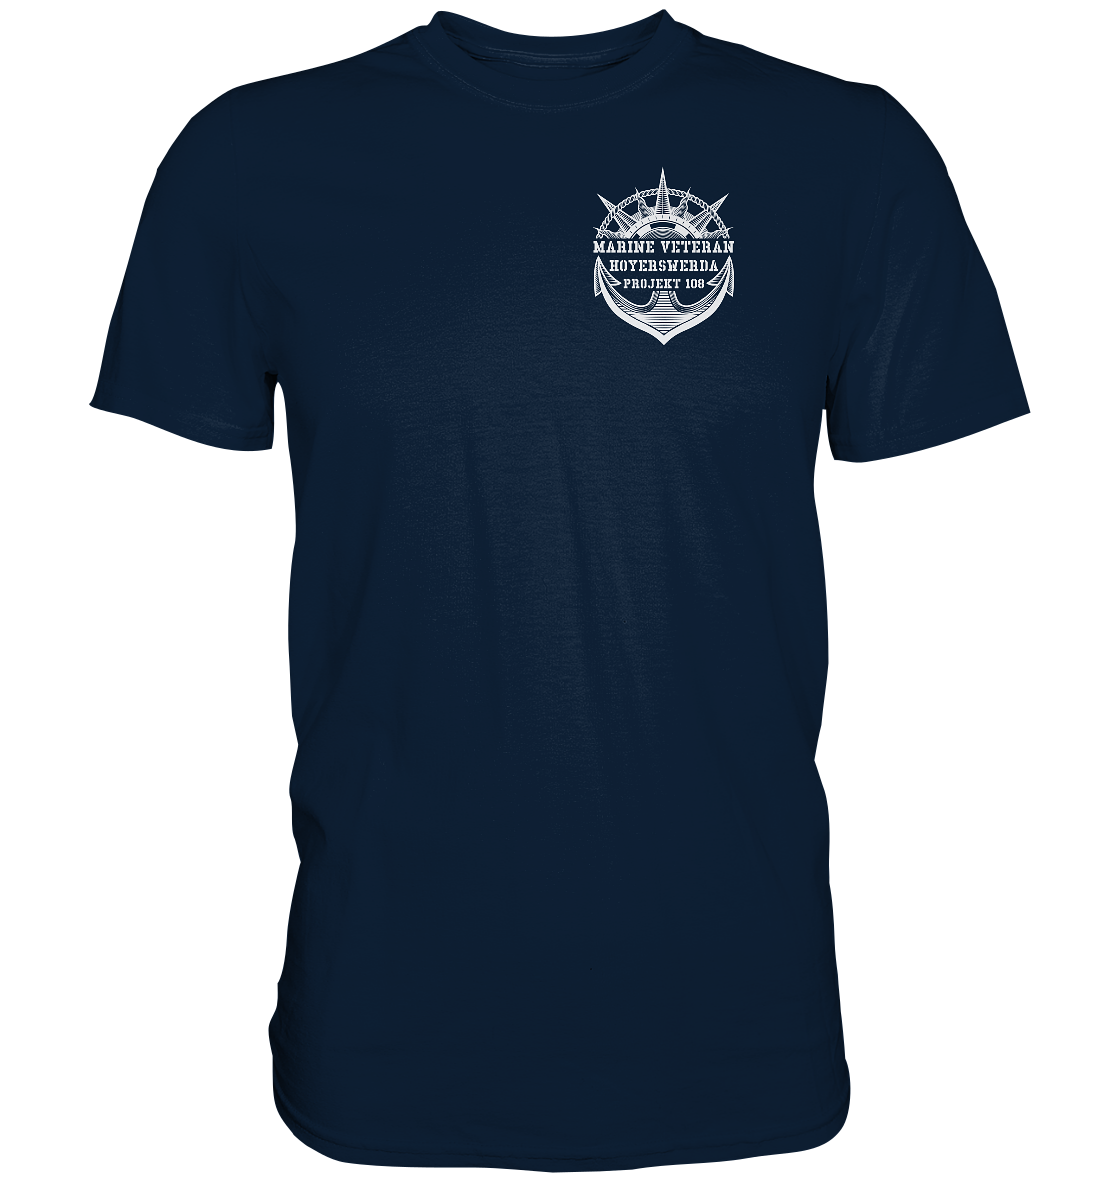 Projekt 108 HOYERSWERDA Marine Veteran Brustlogo - Premium Shirt